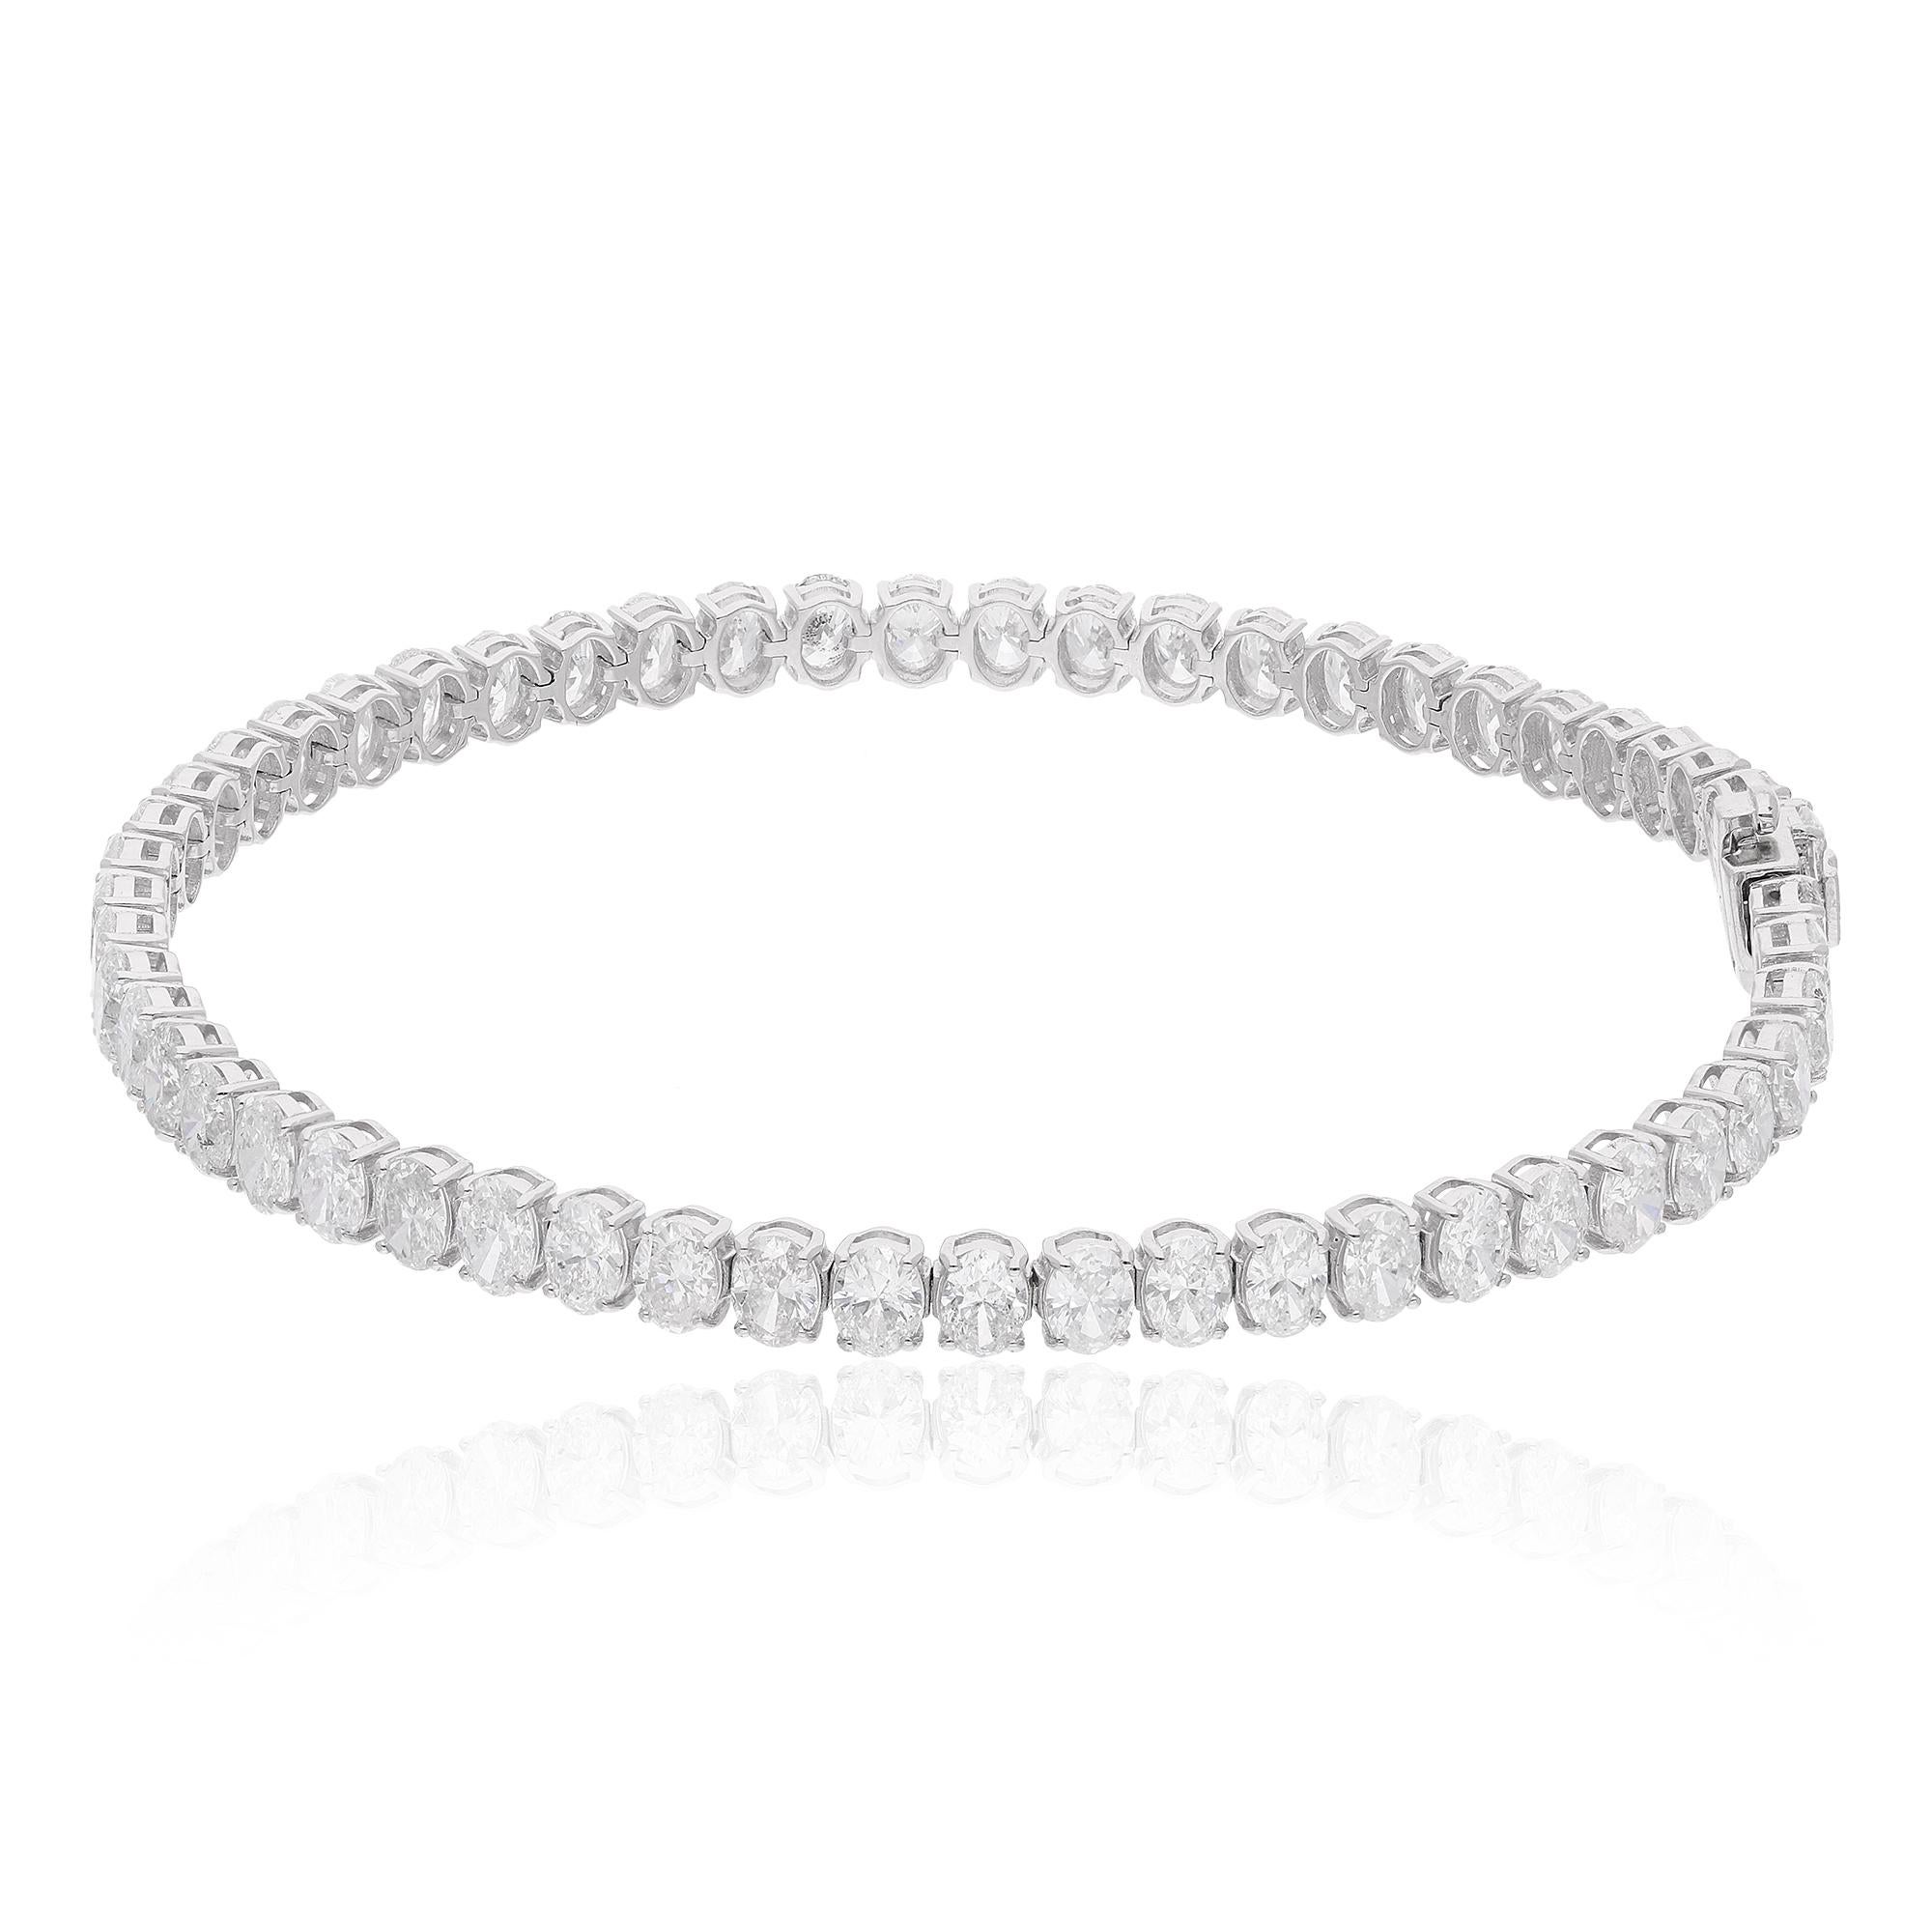 Code de l'article :- SEBR-43404E
Poids brut :- 8.14 gm
Or blanc 18k Poids :- 6.64 gm
Poids du diamant naturel :- 7.48 Ct. ( DIAMANT MOYEN DE PURETÉ SI1-SI2 ET DE COULEUR H-I )
Longueur du bracelet :- 7 pouces de long

✦